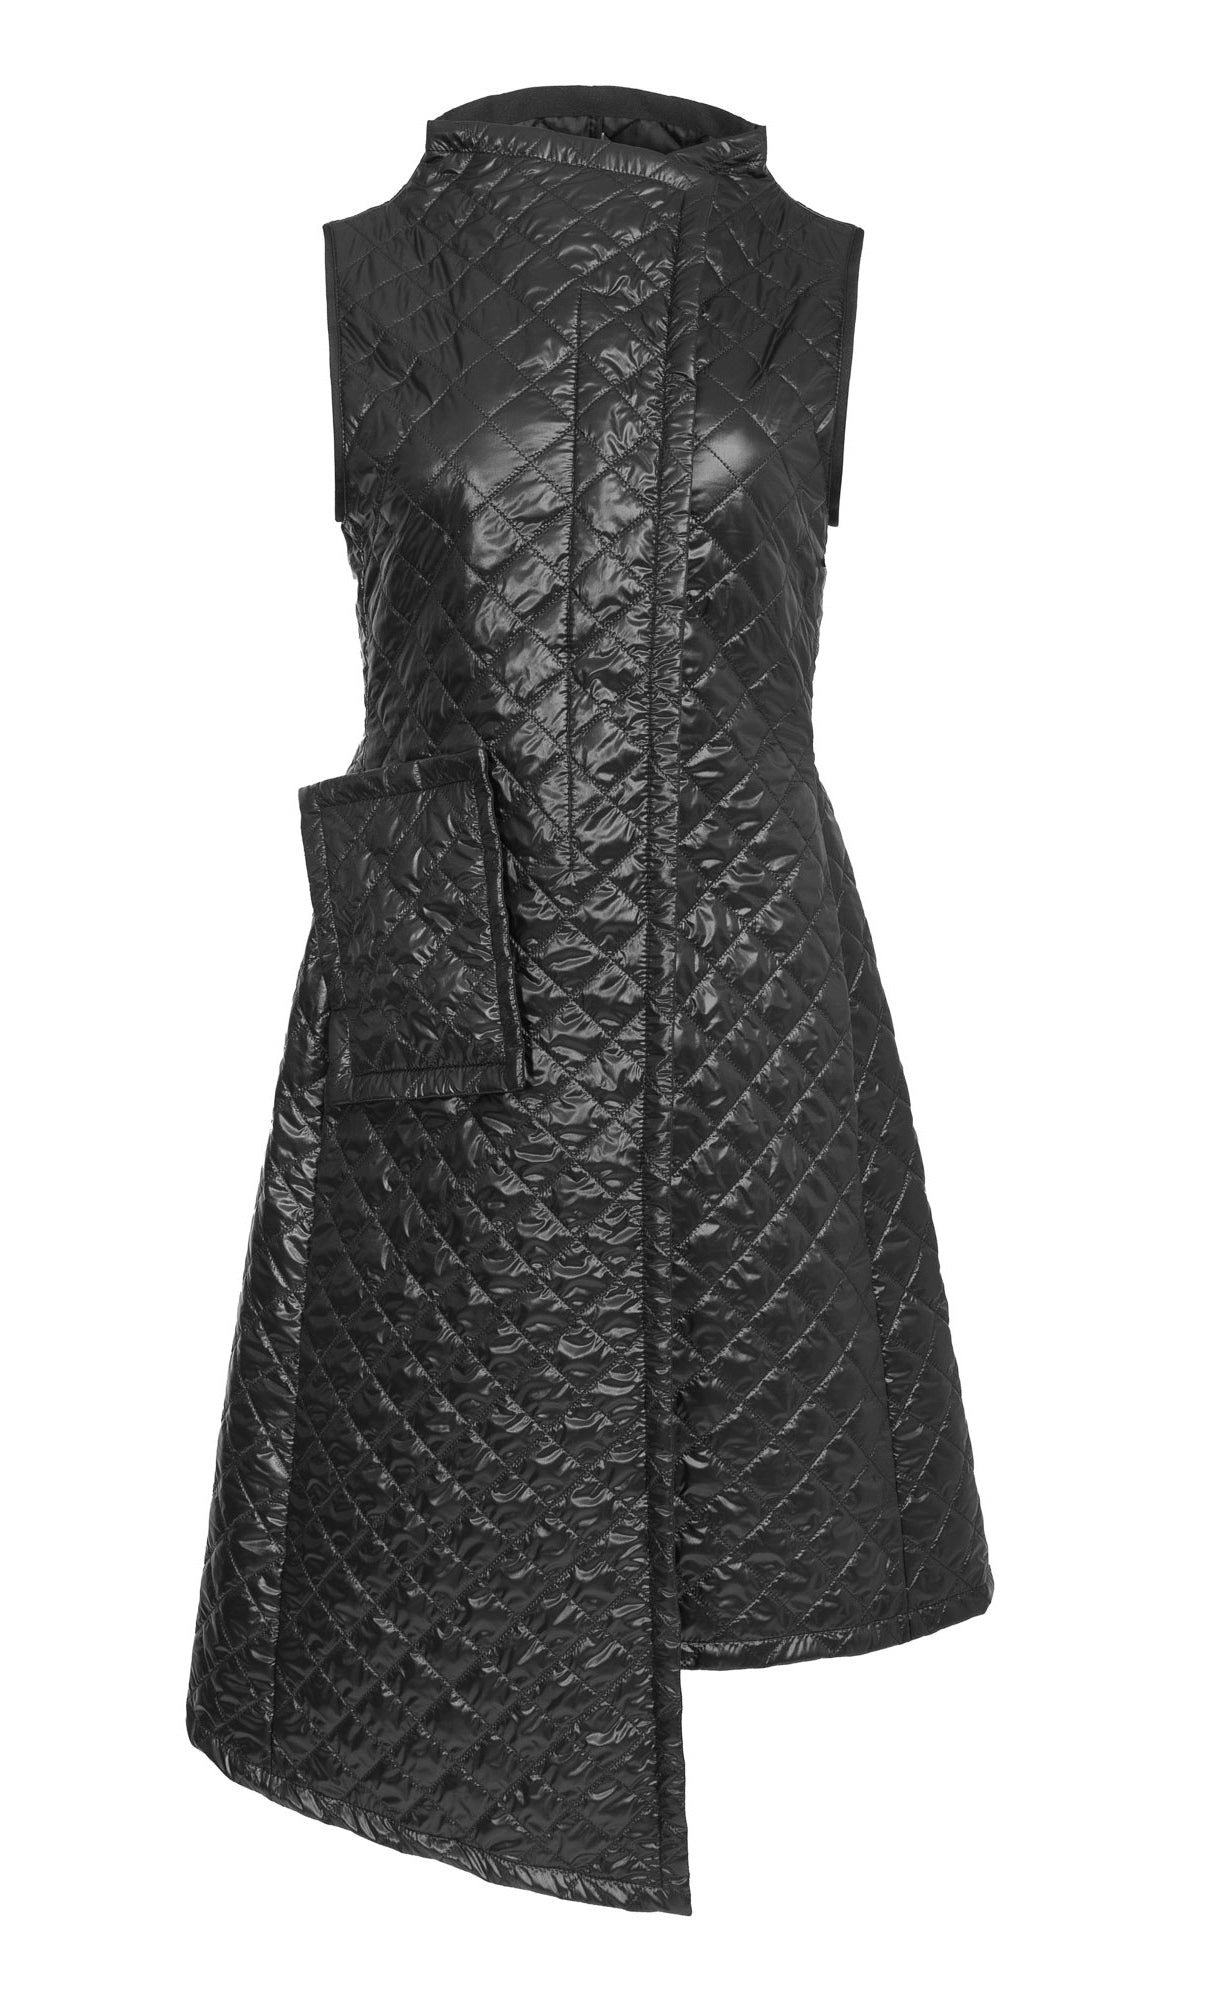 Front view of the xenia design zato vest in black.